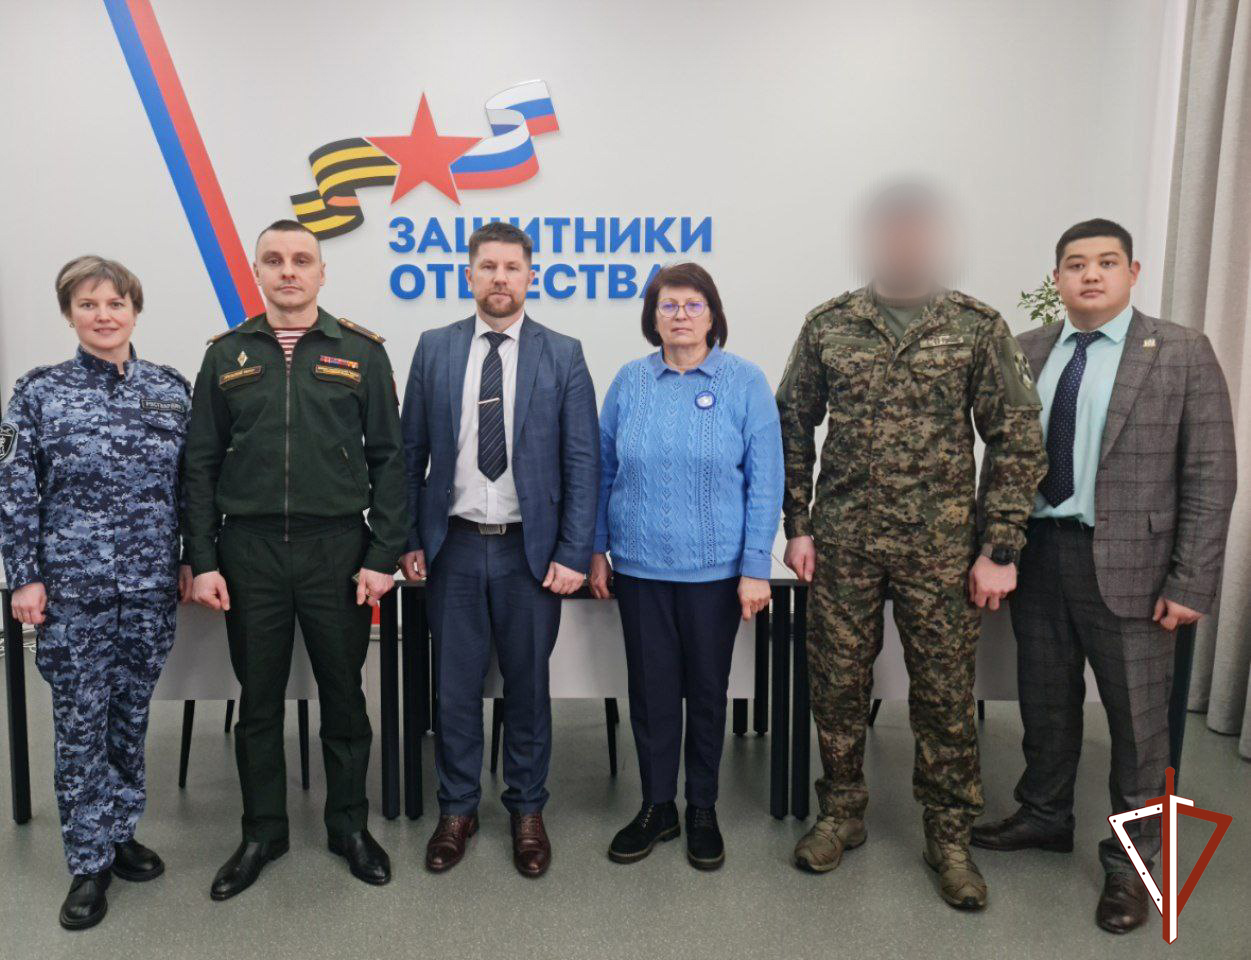 Офицеры Росгвардии встретились с руководством фонда «Защитники Отечества» в Ханты-Мансийске